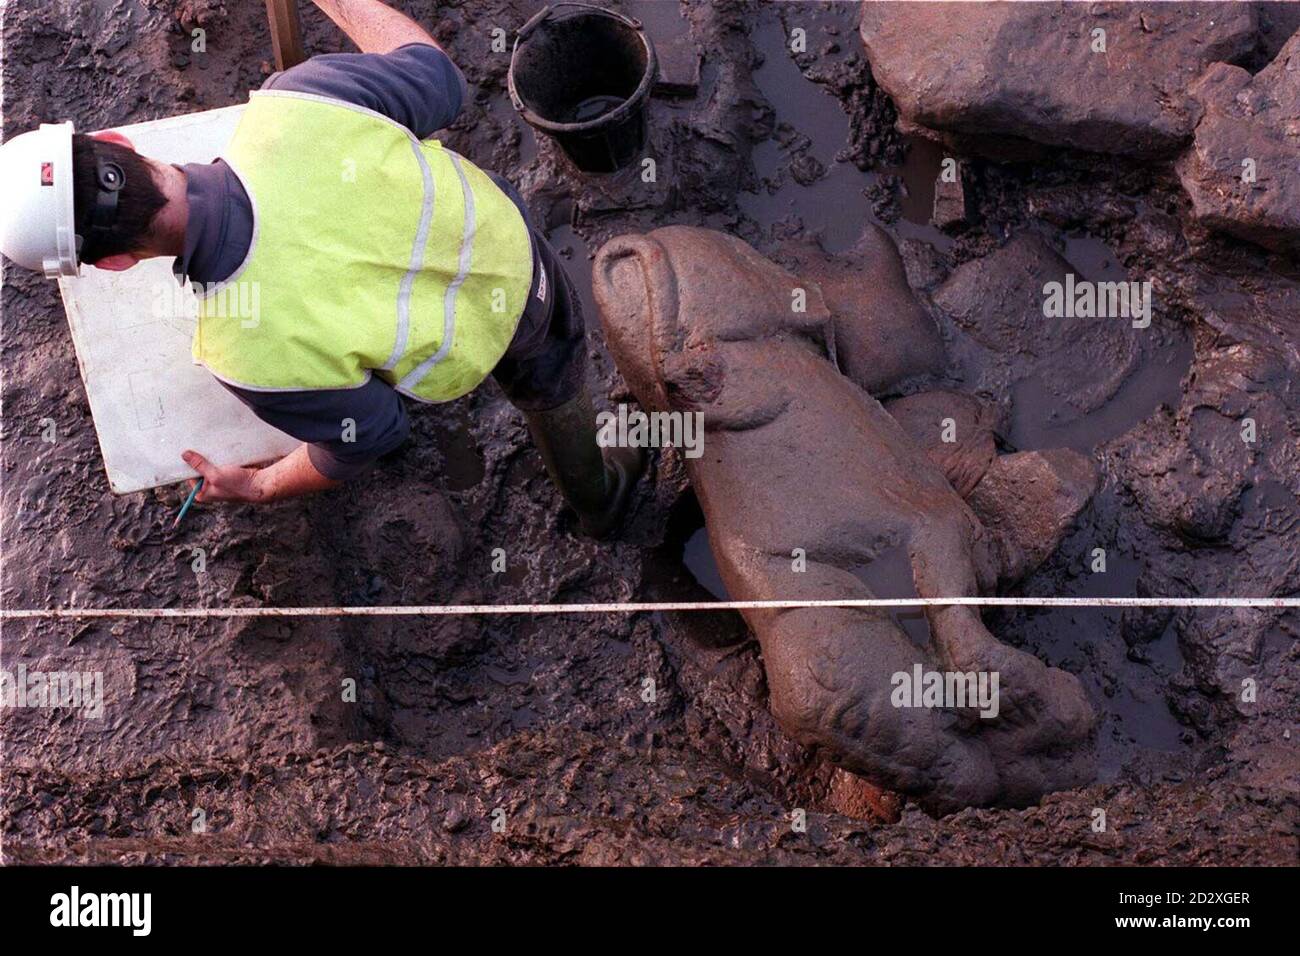 Die 1,5m hohe Sandsteinskulptur einer Löwin, die einen Mann verschlingt, eines der schönsten römischen Reliquien Großbritanniens, nachdem sie heute (Montag) aus dem Schlamm, der sie seit etwa 1,800 Jahren umhüllt und geschützt hat, am Ufer des Flusses Almond in Cramond, nahe Edinburgh, befreit wurde. Siehe PA Story SOCIAL Roman. Stockfoto